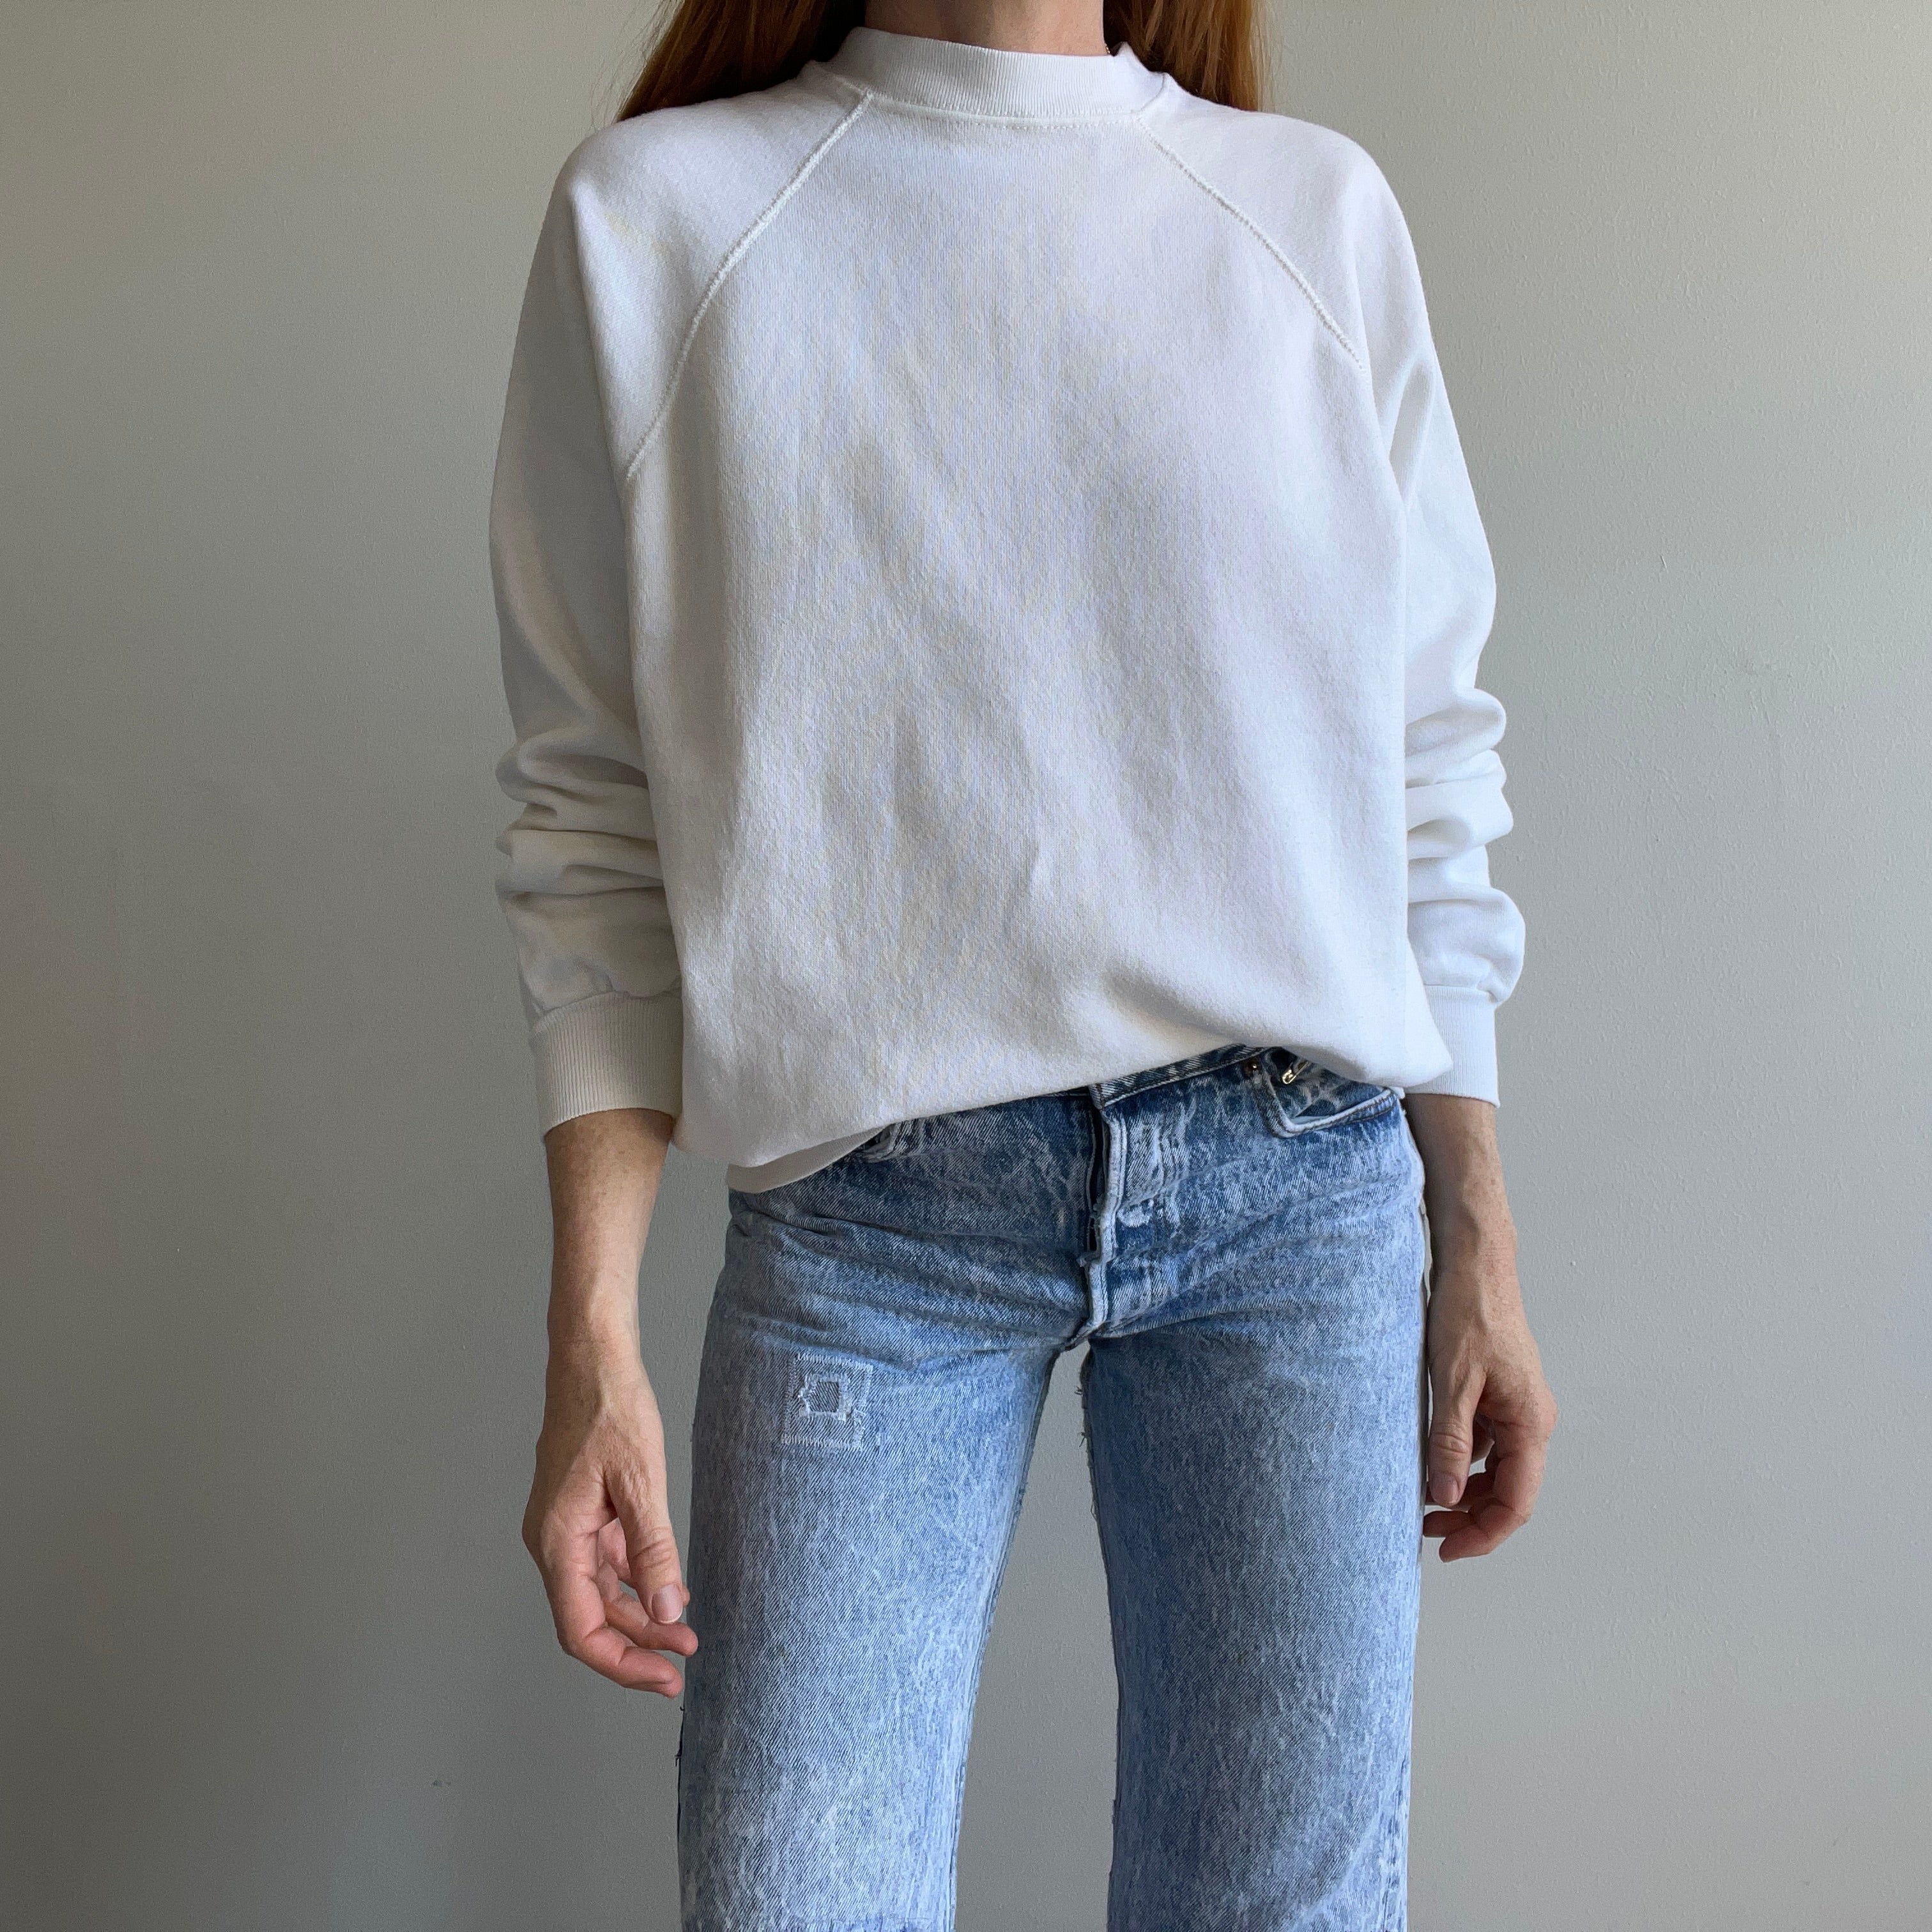 1980s Blank White Sweatshirt